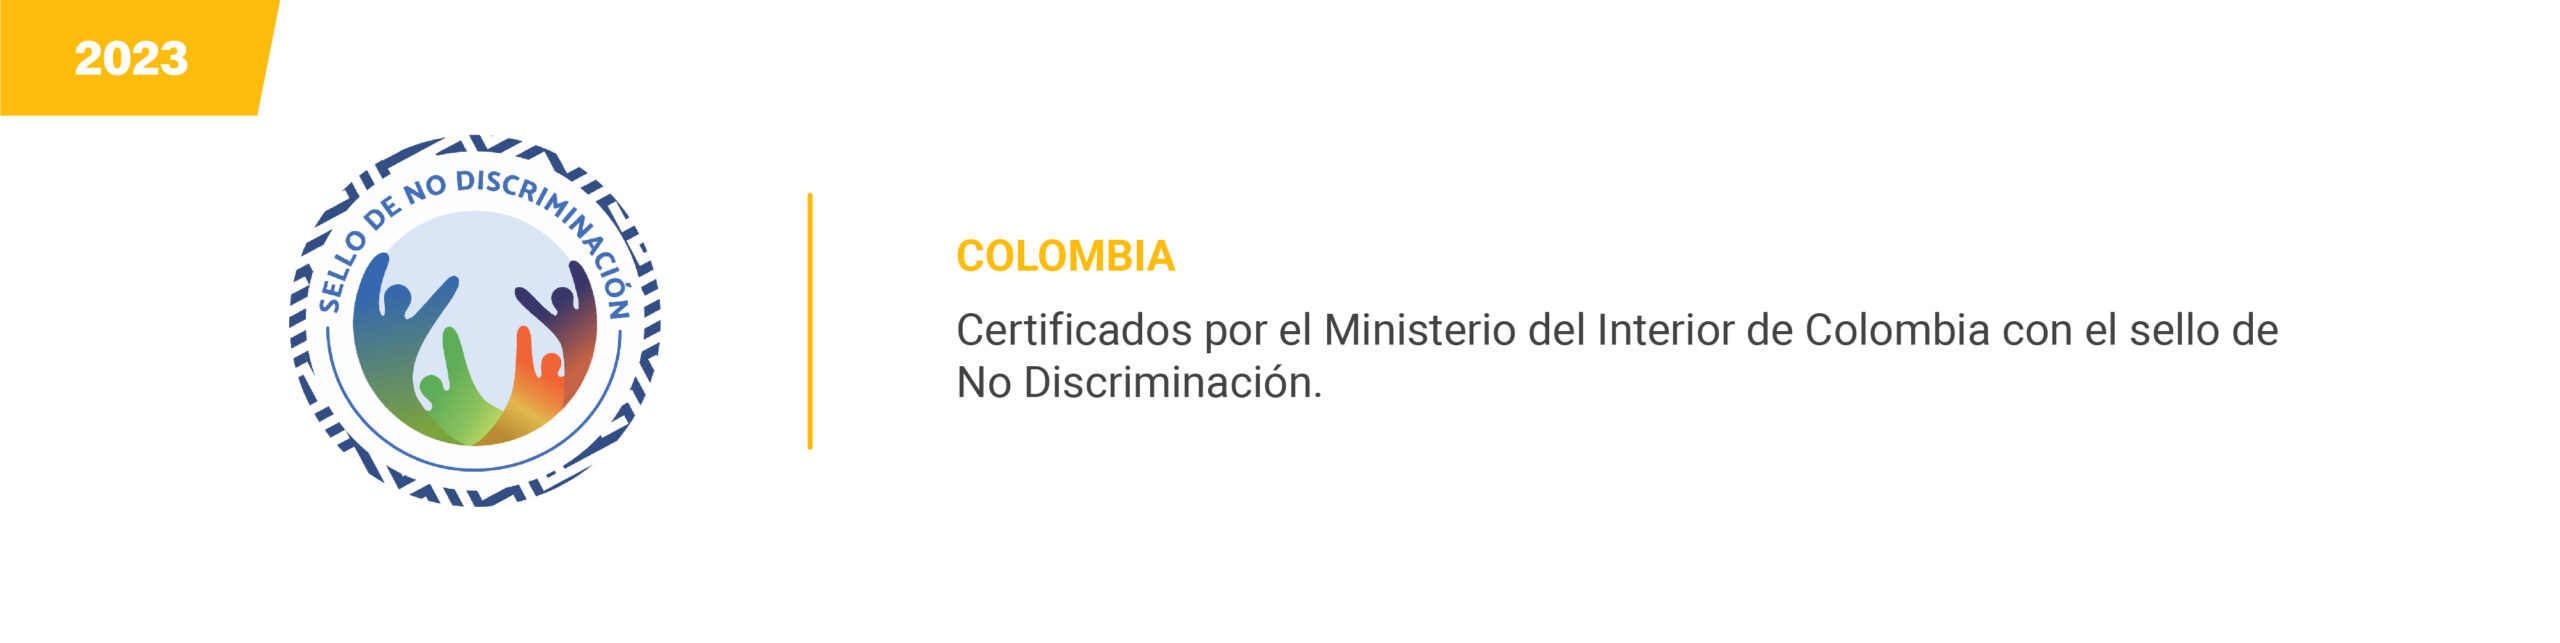 Colombia - No discriminación